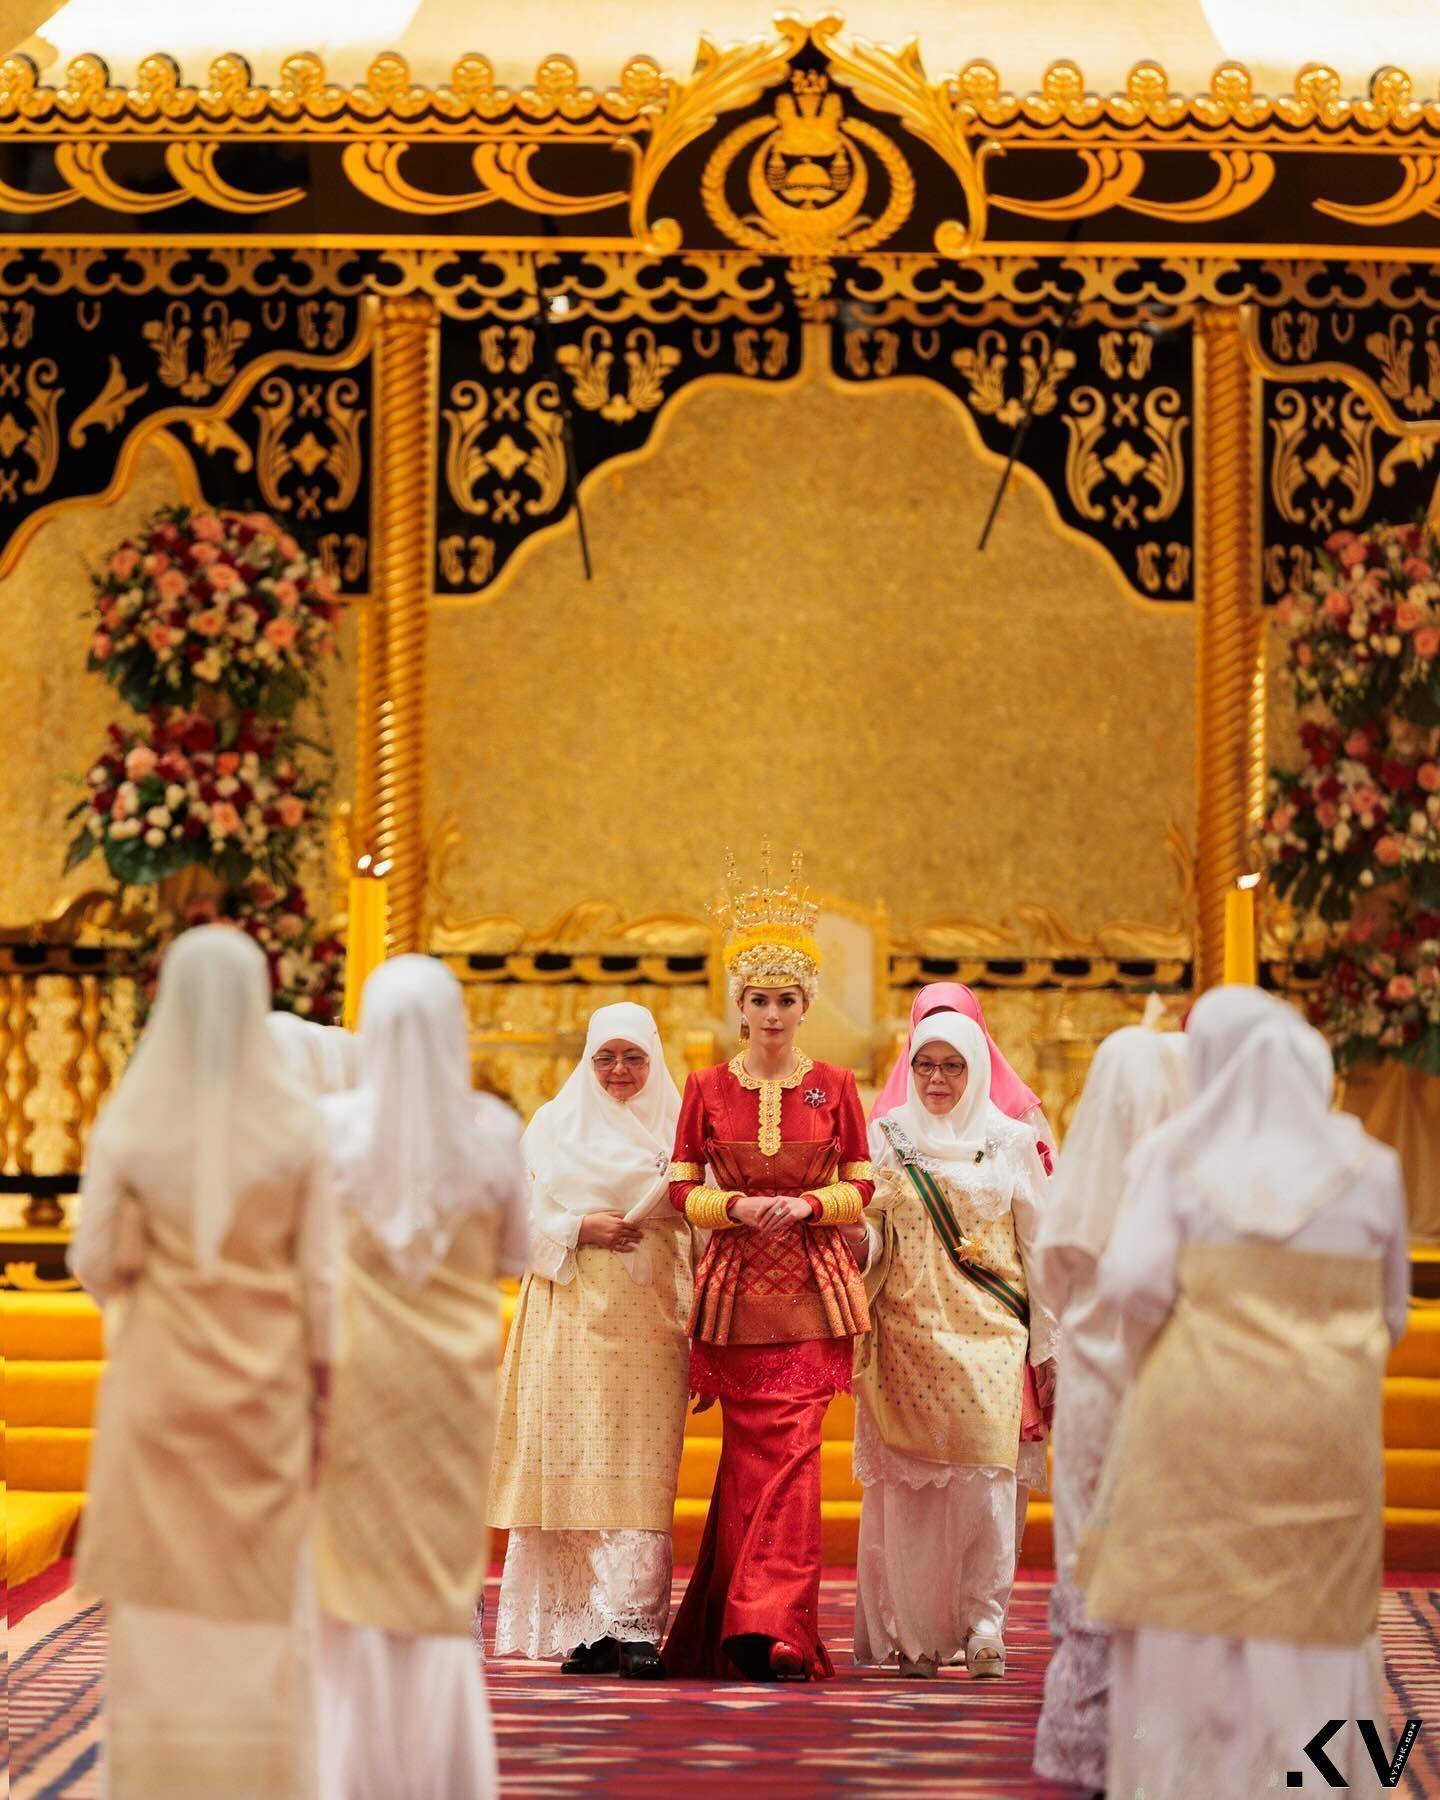 汶莱“亚洲最帅王子”世纪婚礼巨钻闪耀　出卖美娇娘吸奶瓶萌照 奢侈品牌 图4张